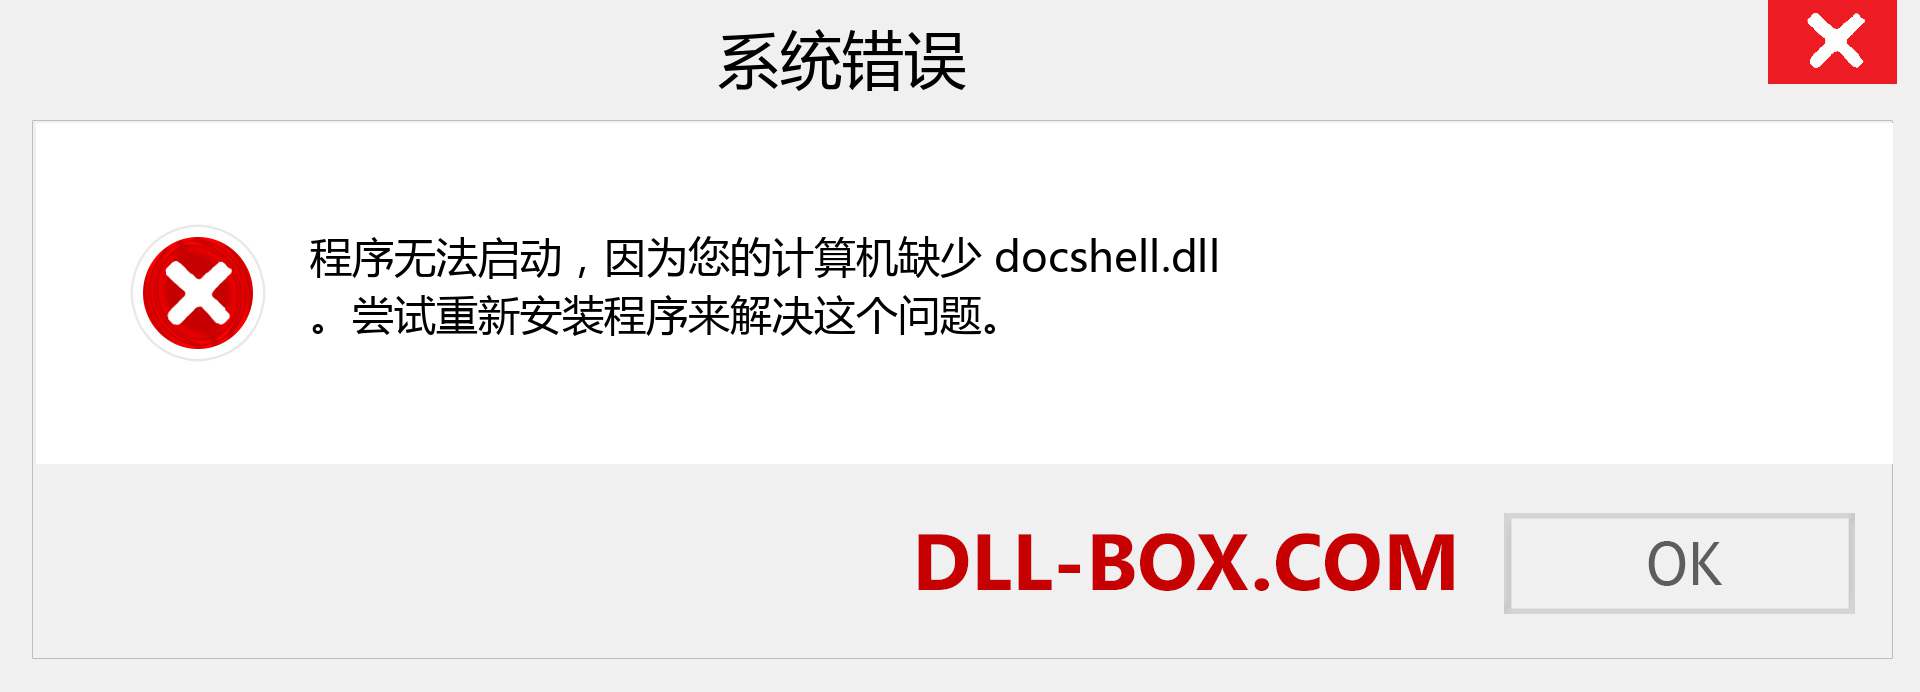 docshell.dll 文件丢失？。 适用于 Windows 7、8、10 的下载 - 修复 Windows、照片、图像上的 docshell dll 丢失错误